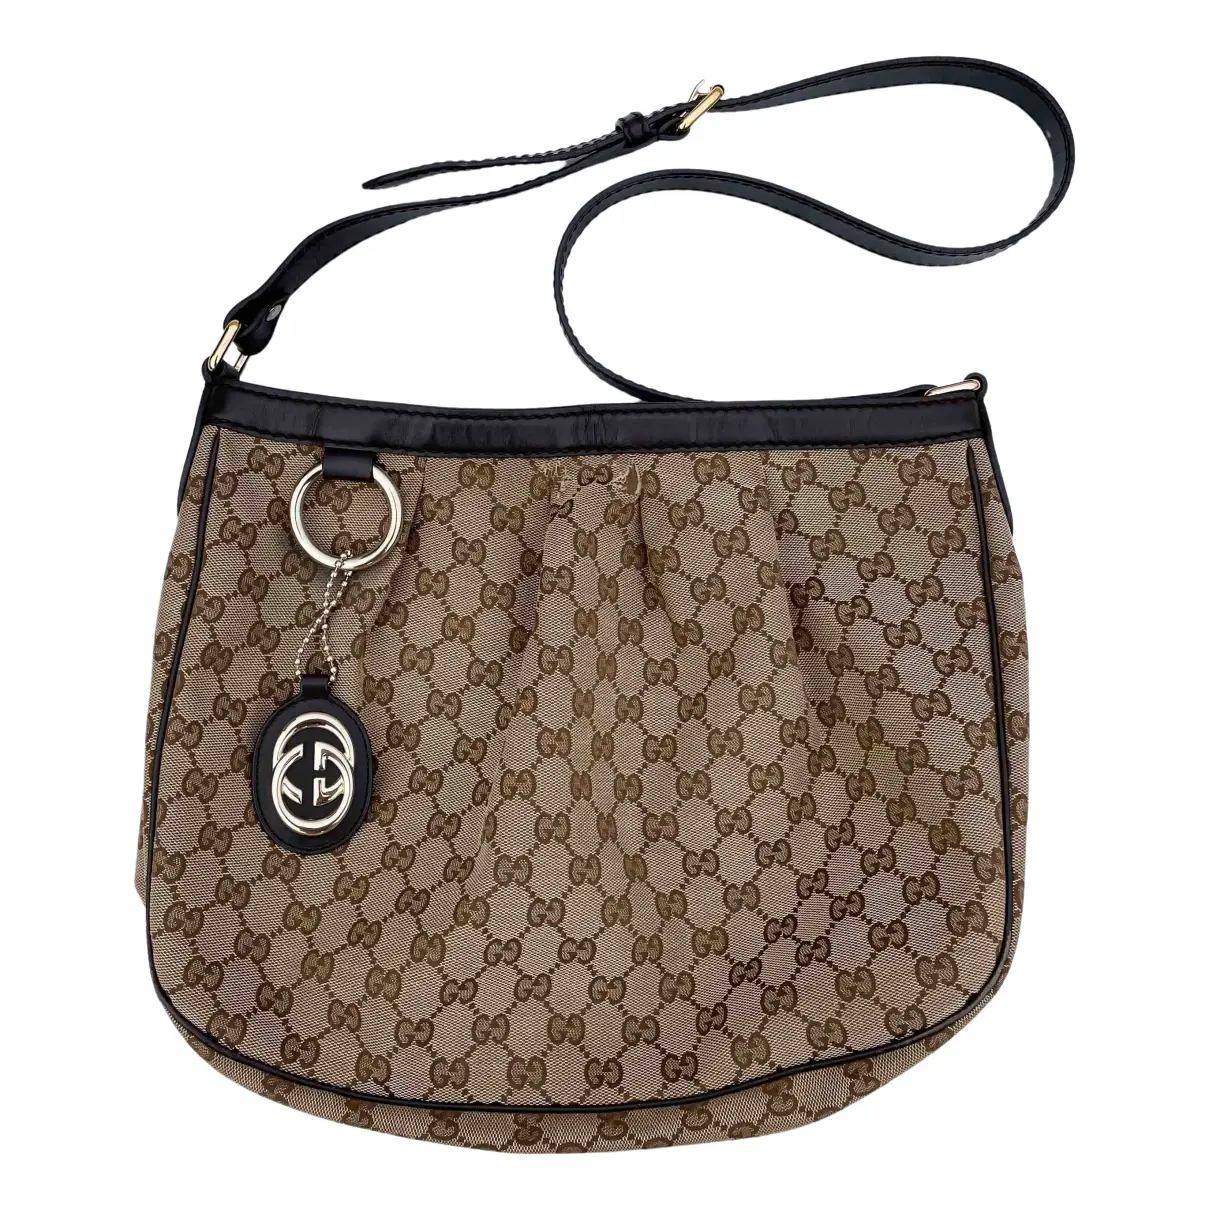 Sukey handbag Gucci - Vintage